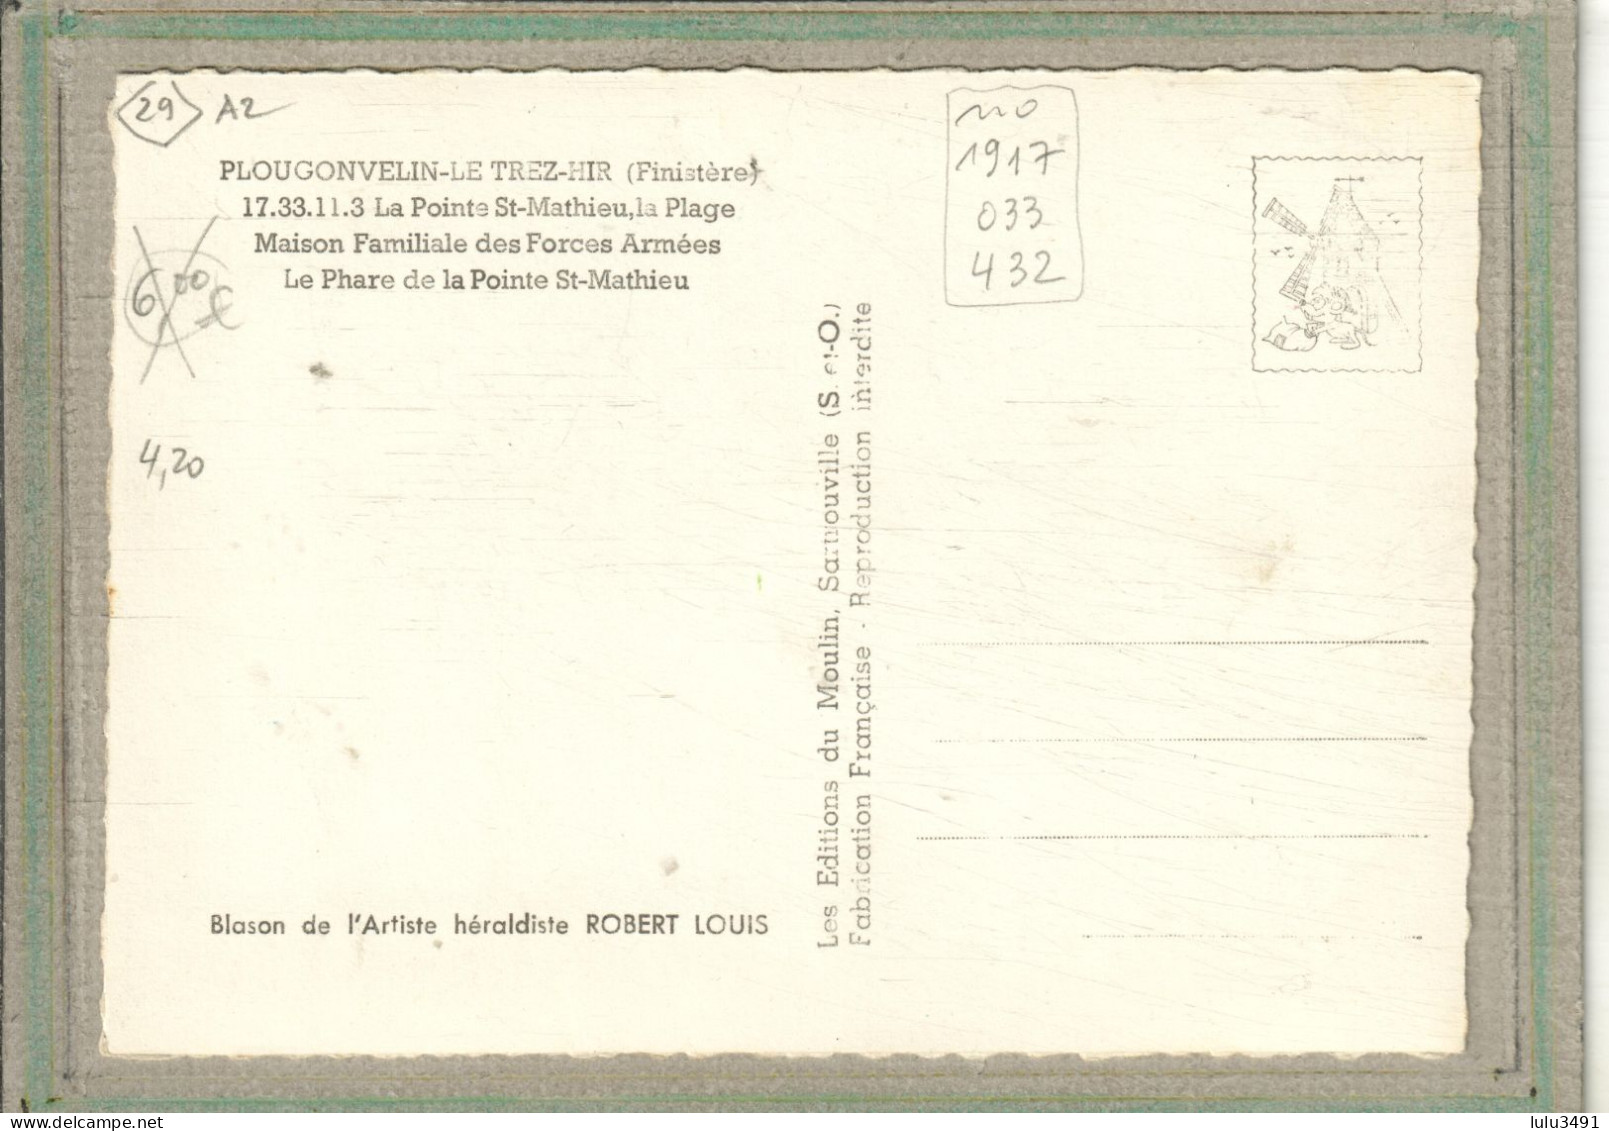 CPSM Dentelée (29) PLOUGONVELIN - Carte Multivues Colorisées Avec Un Cadre En Pierres Sèches - 1960 - Plougonvelin